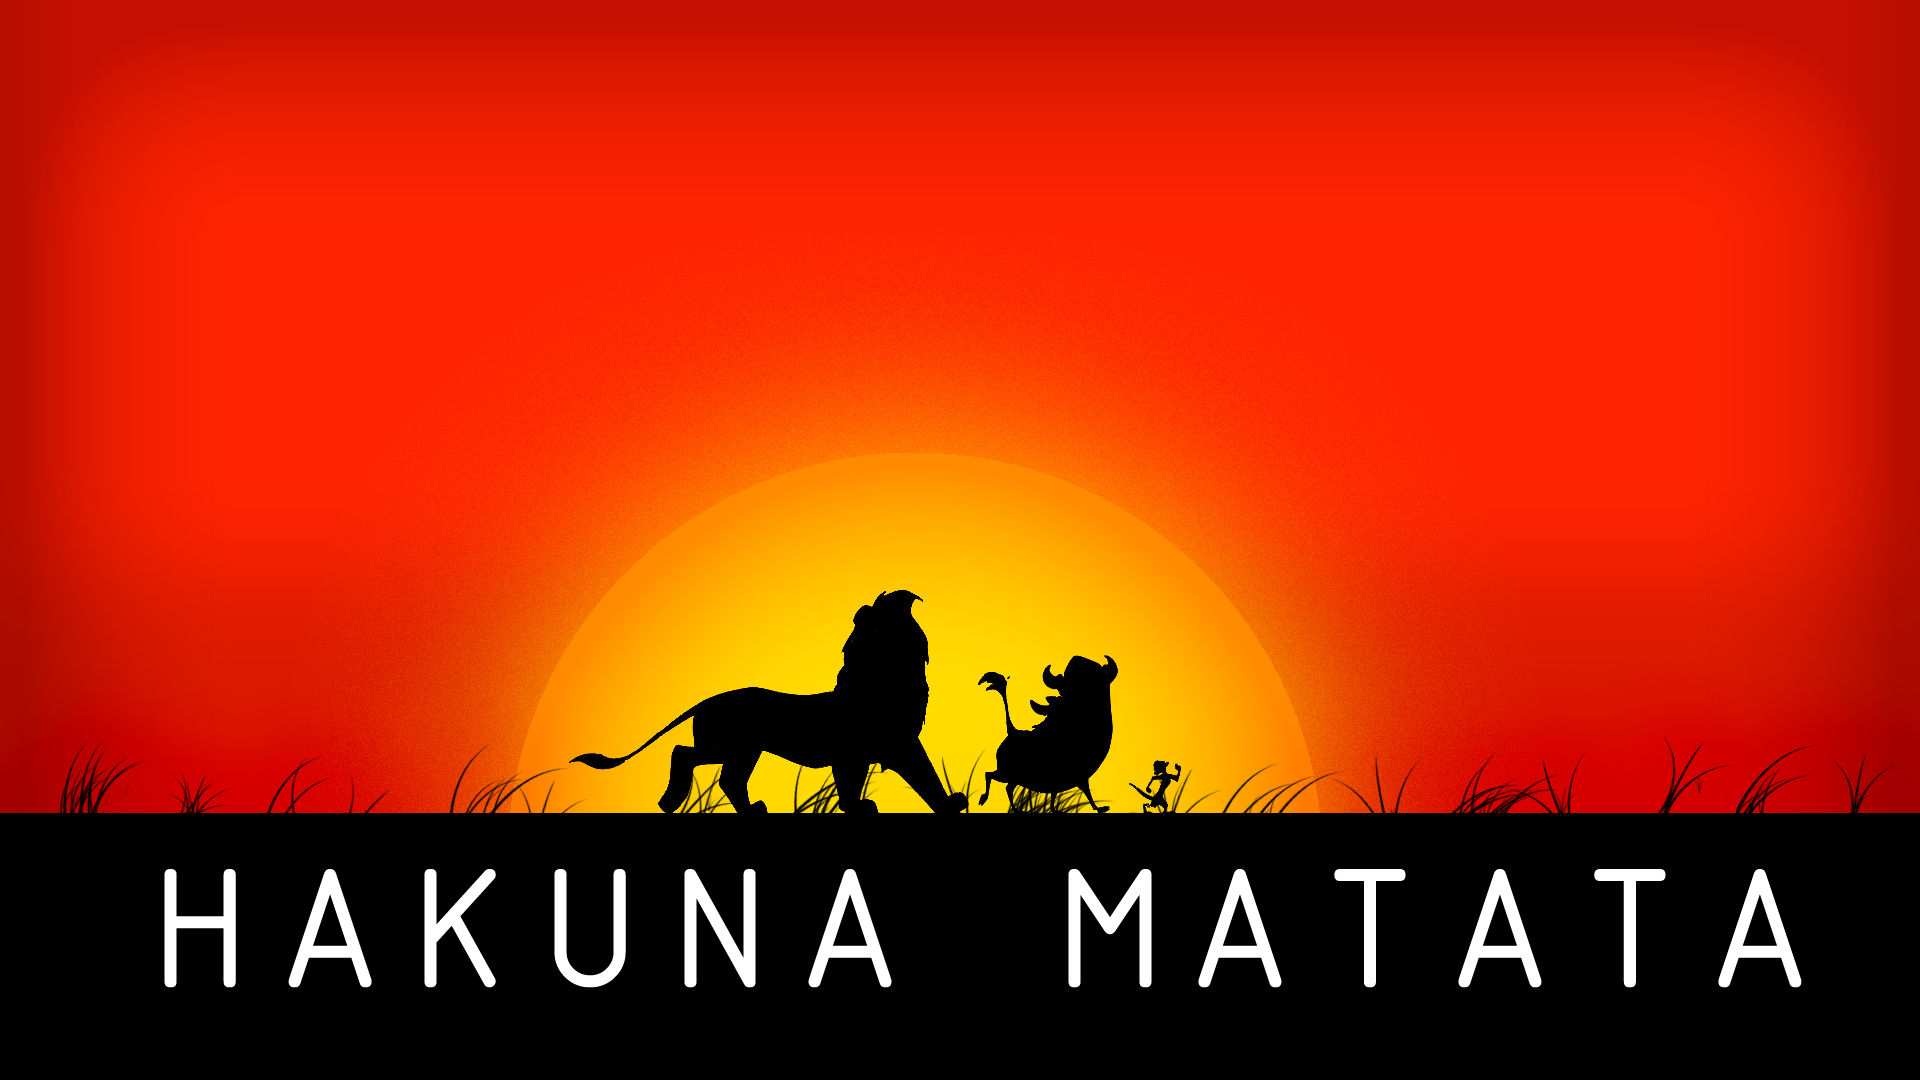 Free download Hakuna Matata Tribal Background Hakuna matata [1920x1080